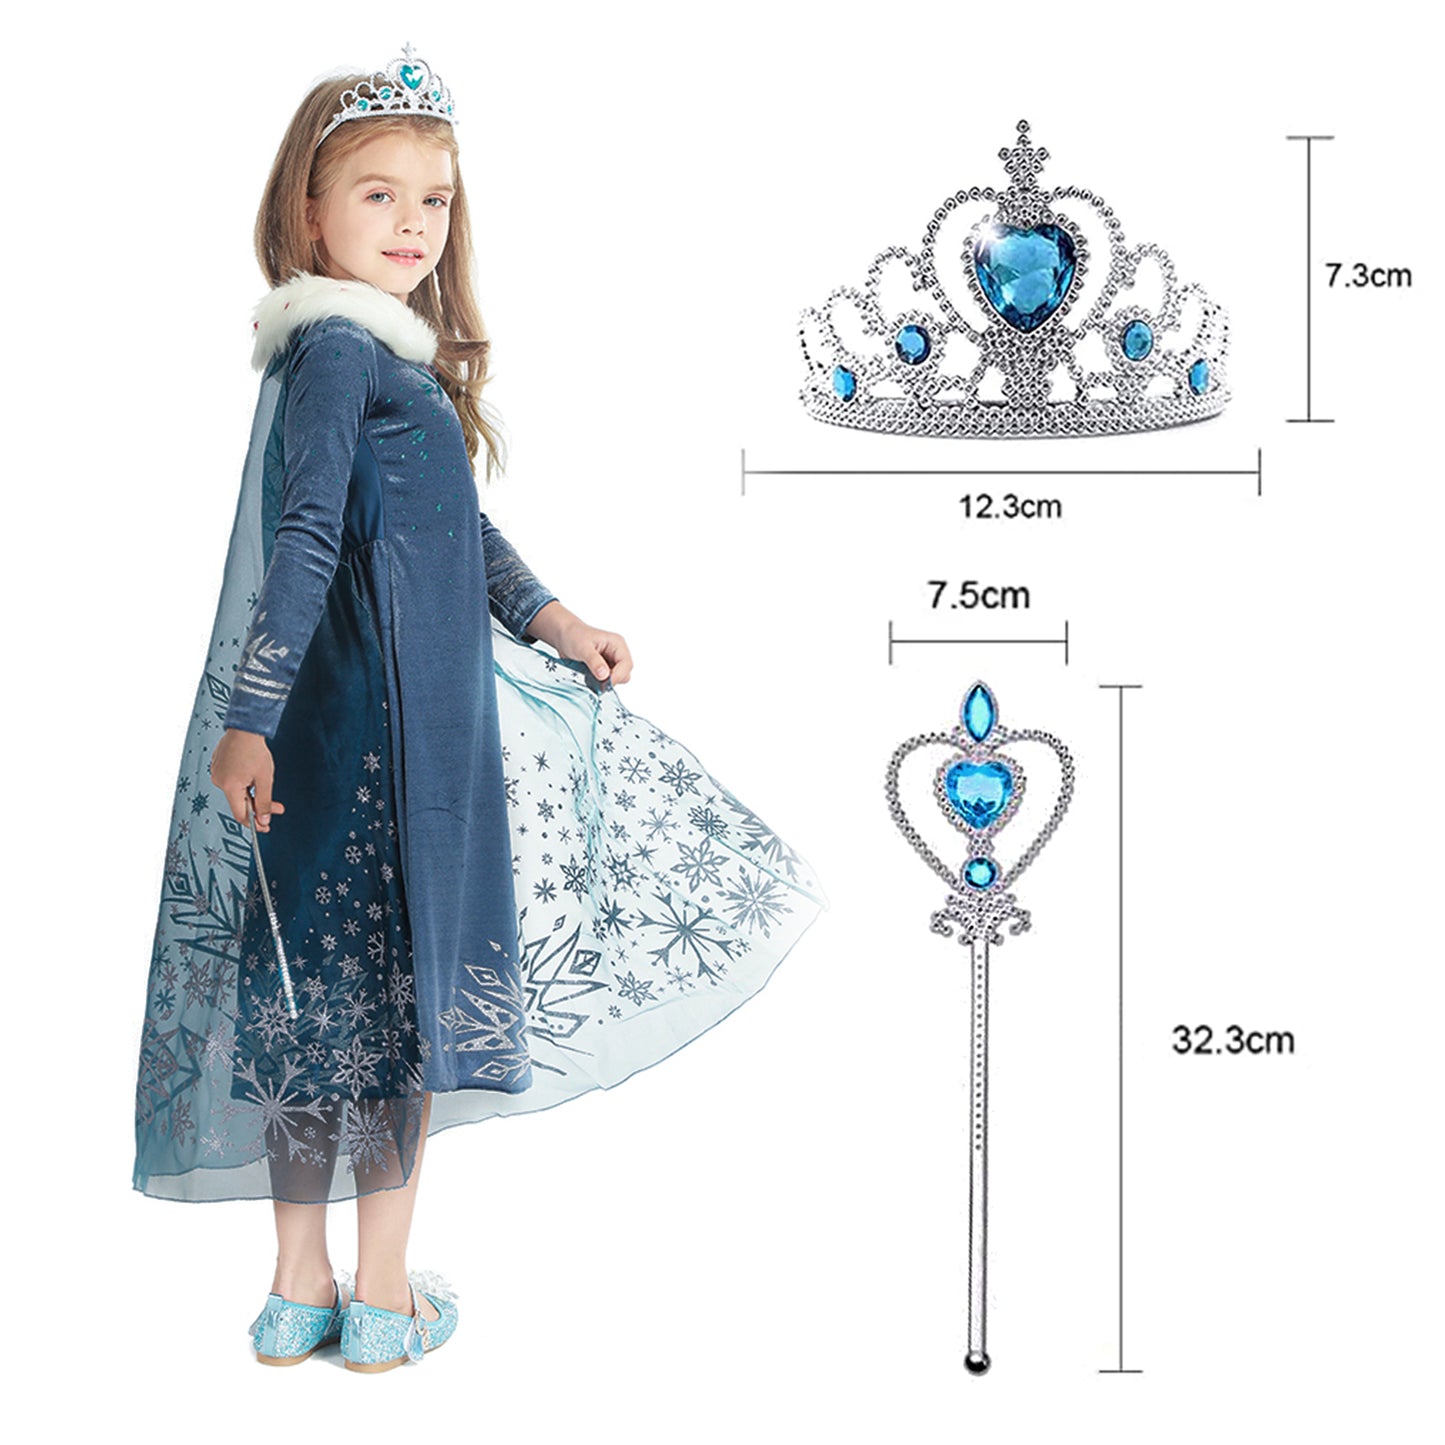 Foierp Costume Dress - Princess Dress Long Sleeves with Cloak Crown Wand Dark Blue